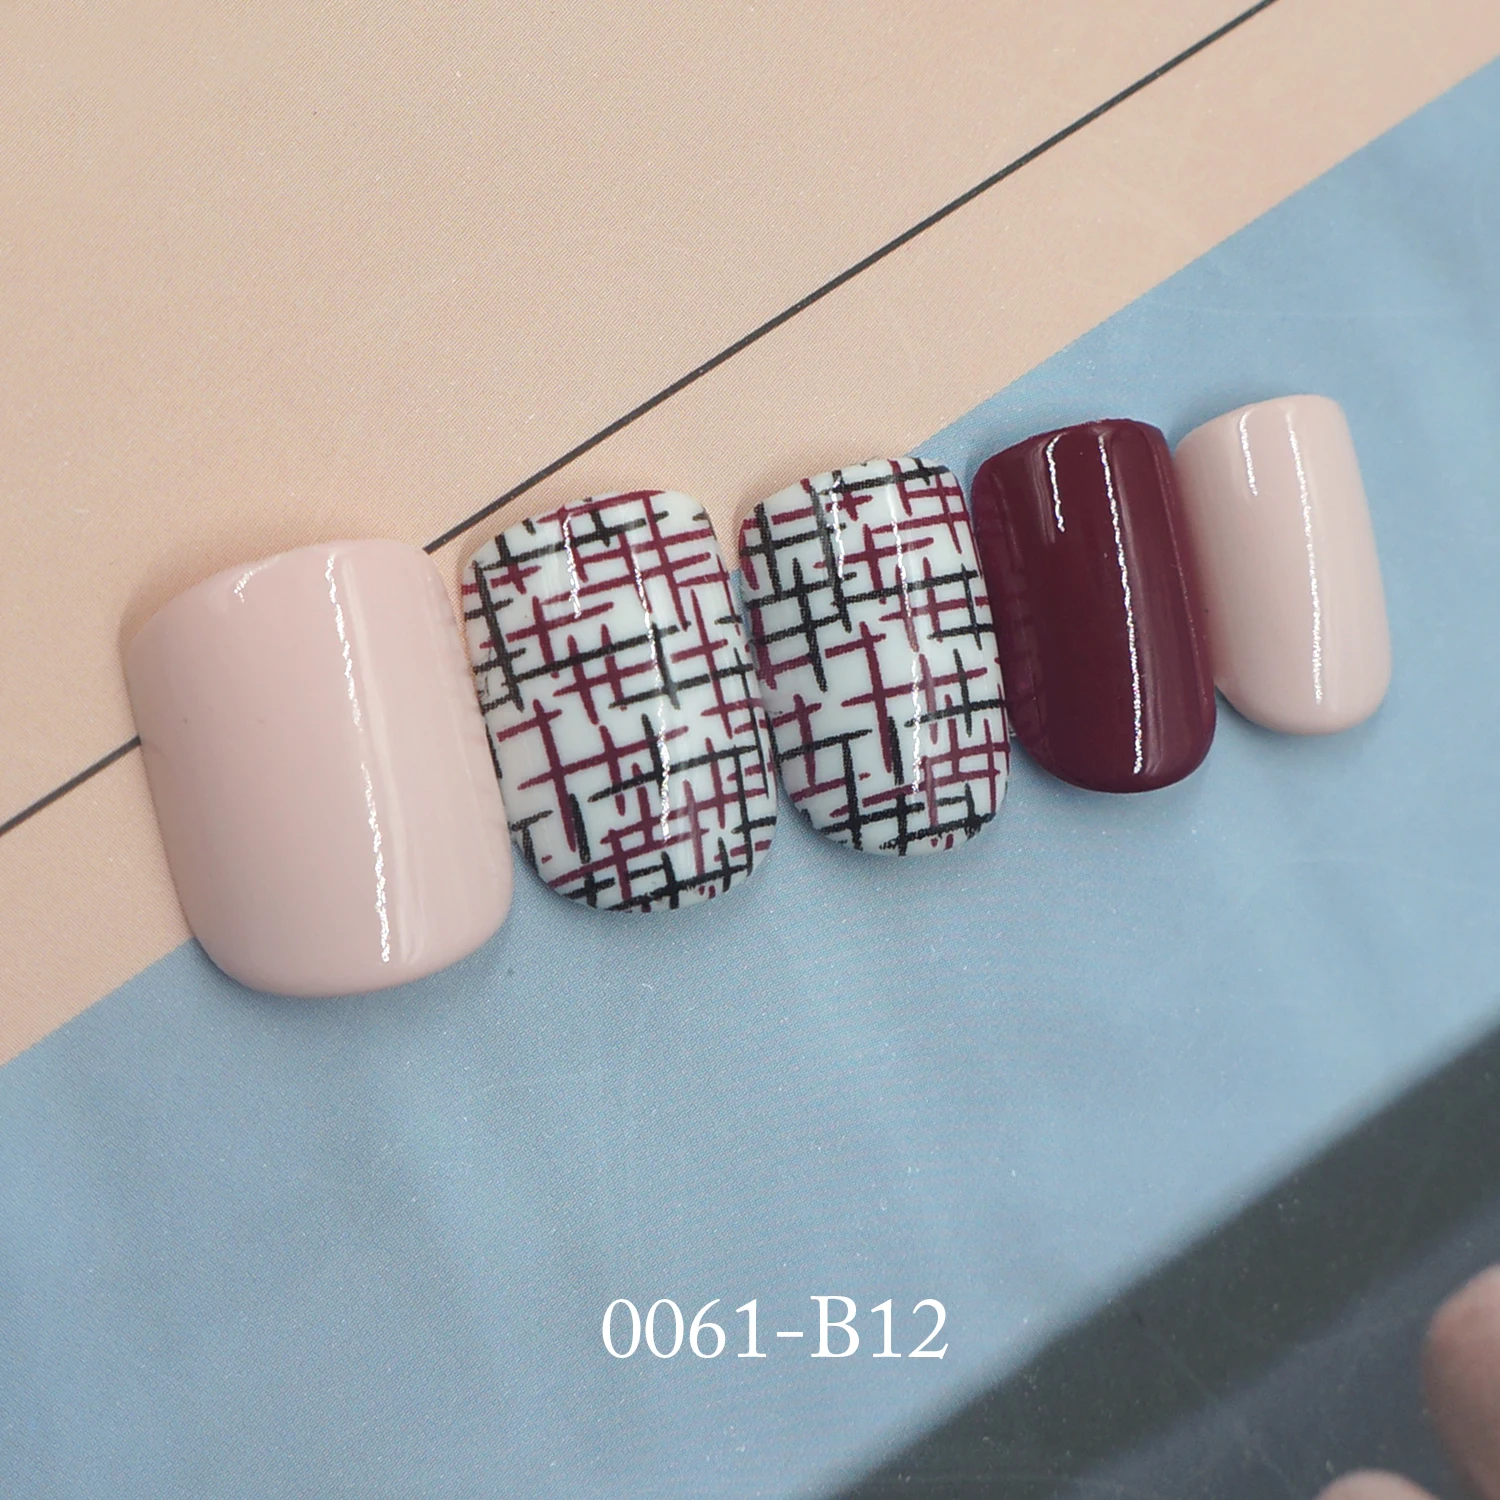 Новые Модные накладные ногти в полоску красного вина и розового цвета, 24 шт. Популярные Накладные ногти для женщин и девочек с наклейками на клею